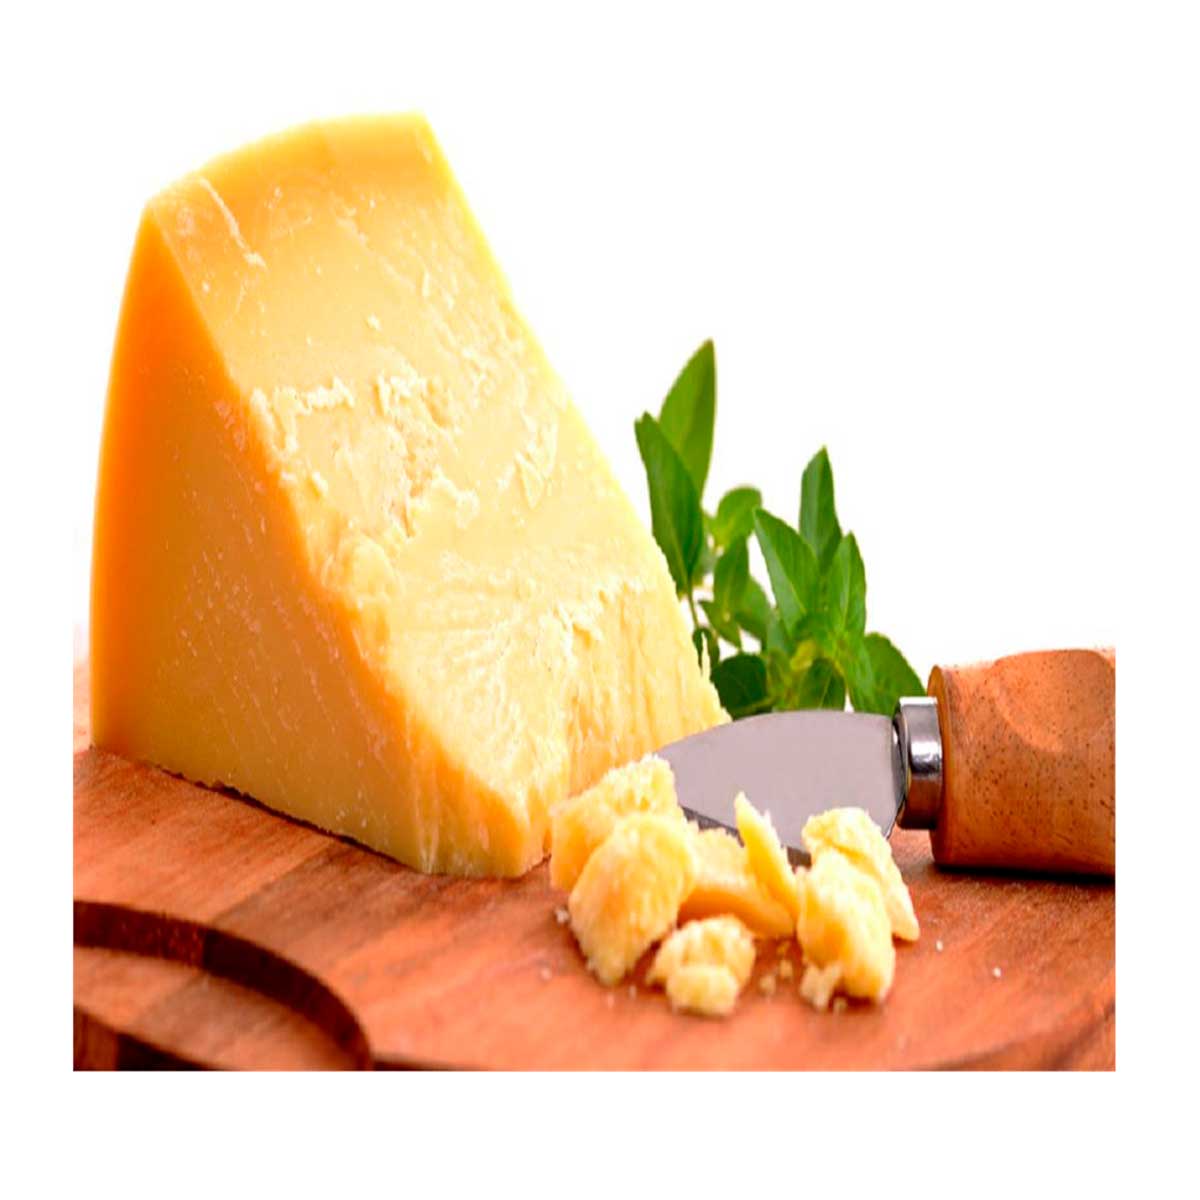 queijo-parmesao-importado-cilindrico-carrefour-200-g-1.jpg